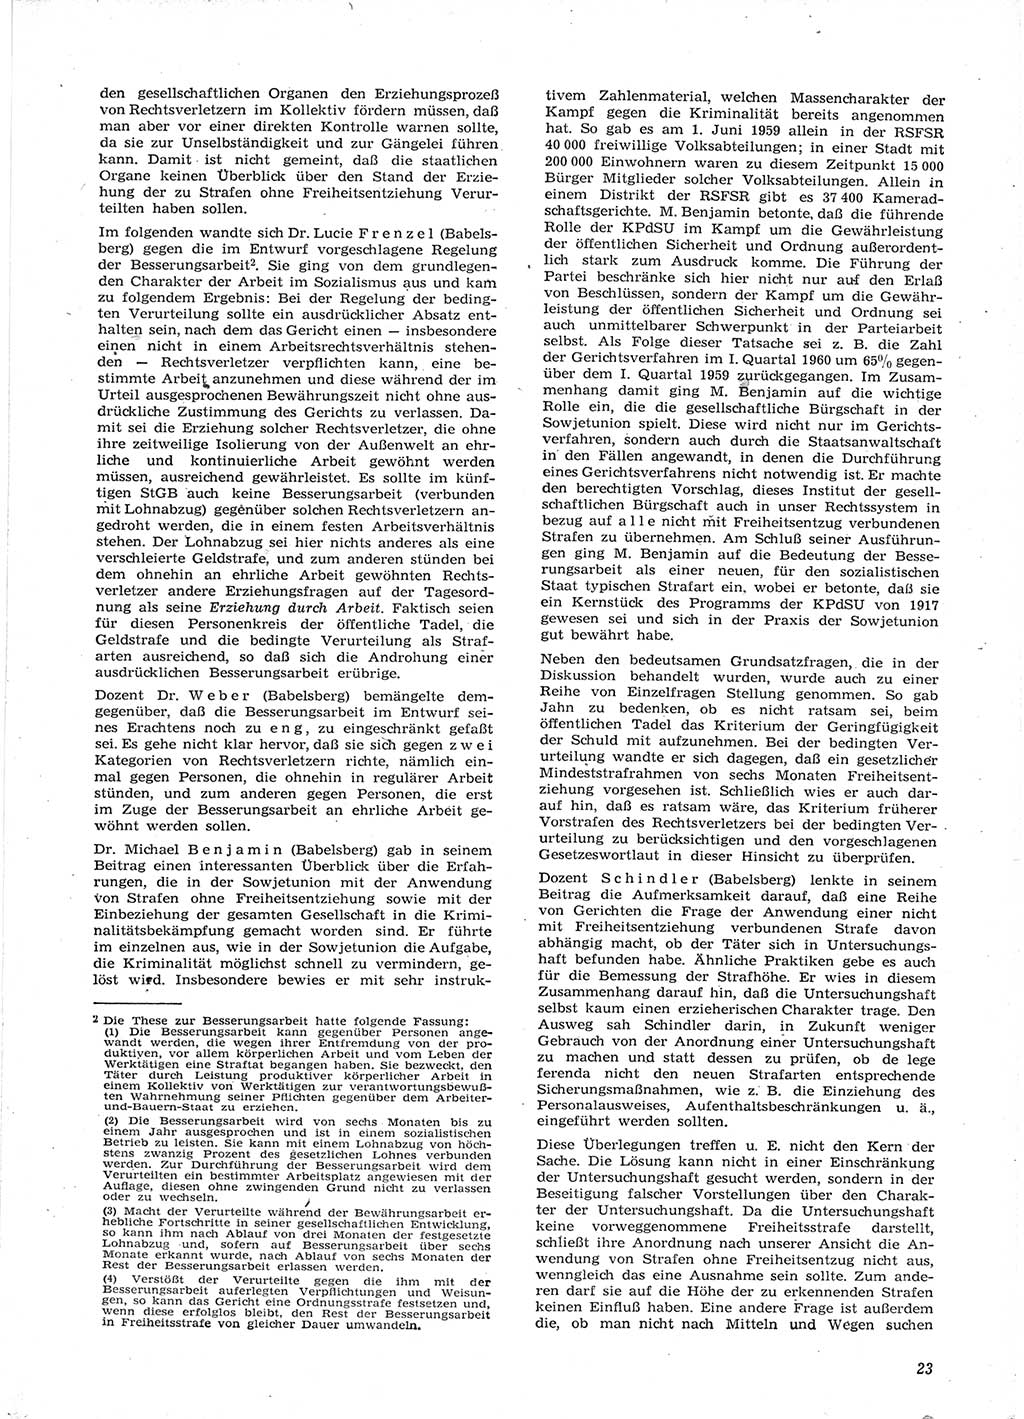 Neue Justiz (NJ), Zeitschrift für Recht und Rechtswissenschaft [Deutsche Demokratische Republik (DDR)], 15. Jahrgang 1961, Seite 23 (NJ DDR 1961, S. 23)